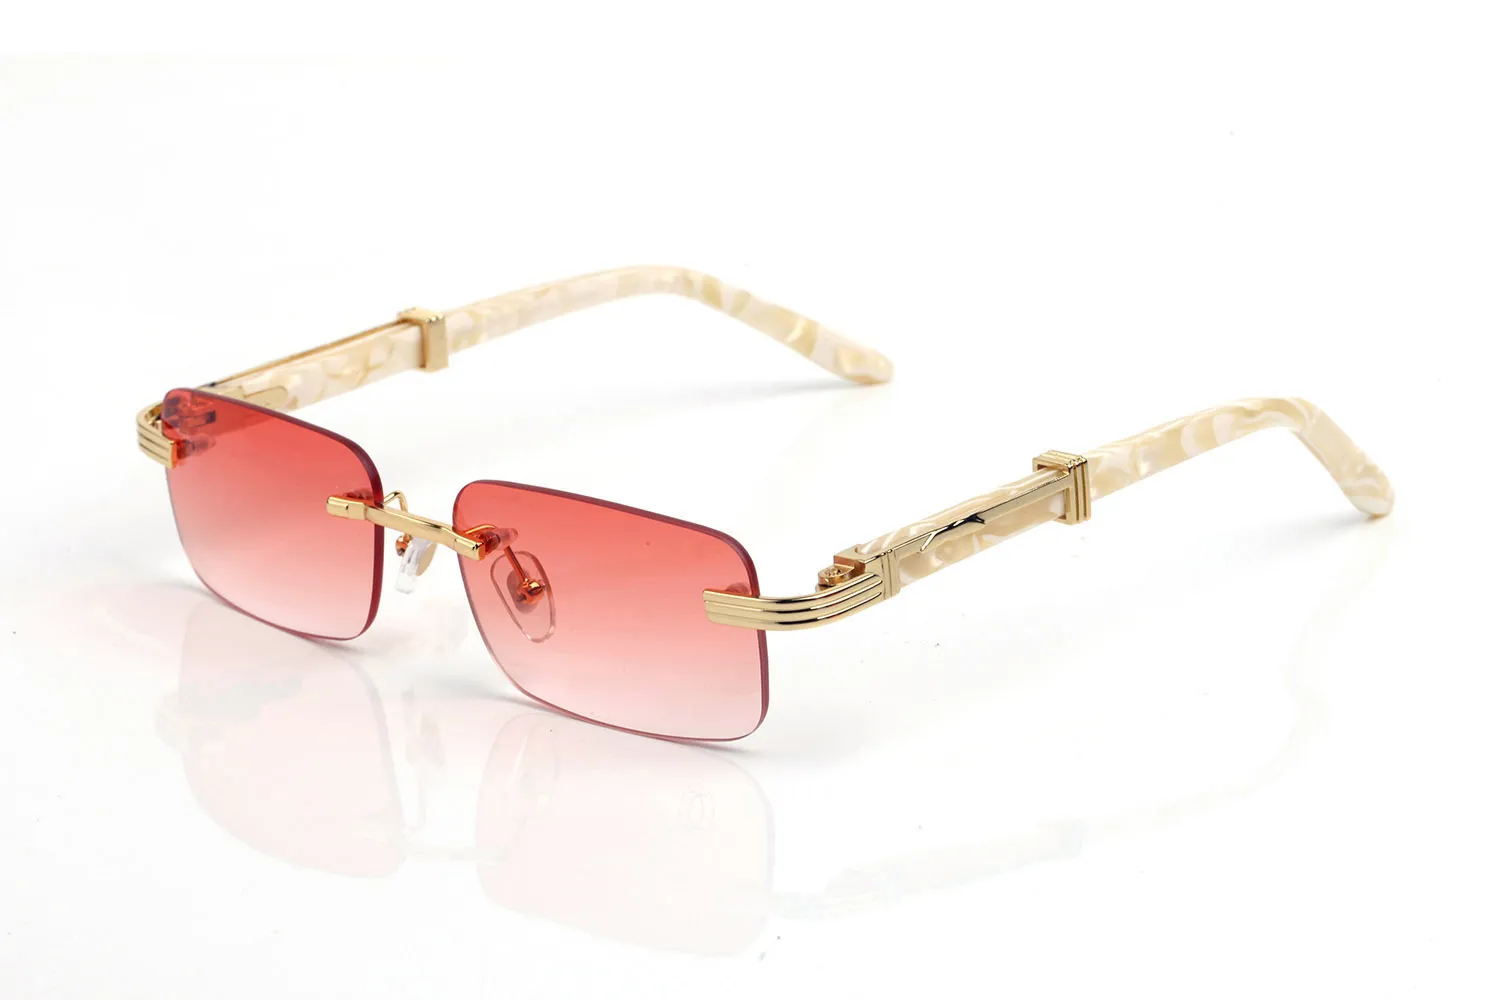 France Design Rimless Sunglasses For Mens Wooden Buffalo Horn Glasses Optical eyeglasses Women Waving Gold Wooden Eyewear Frames L2674